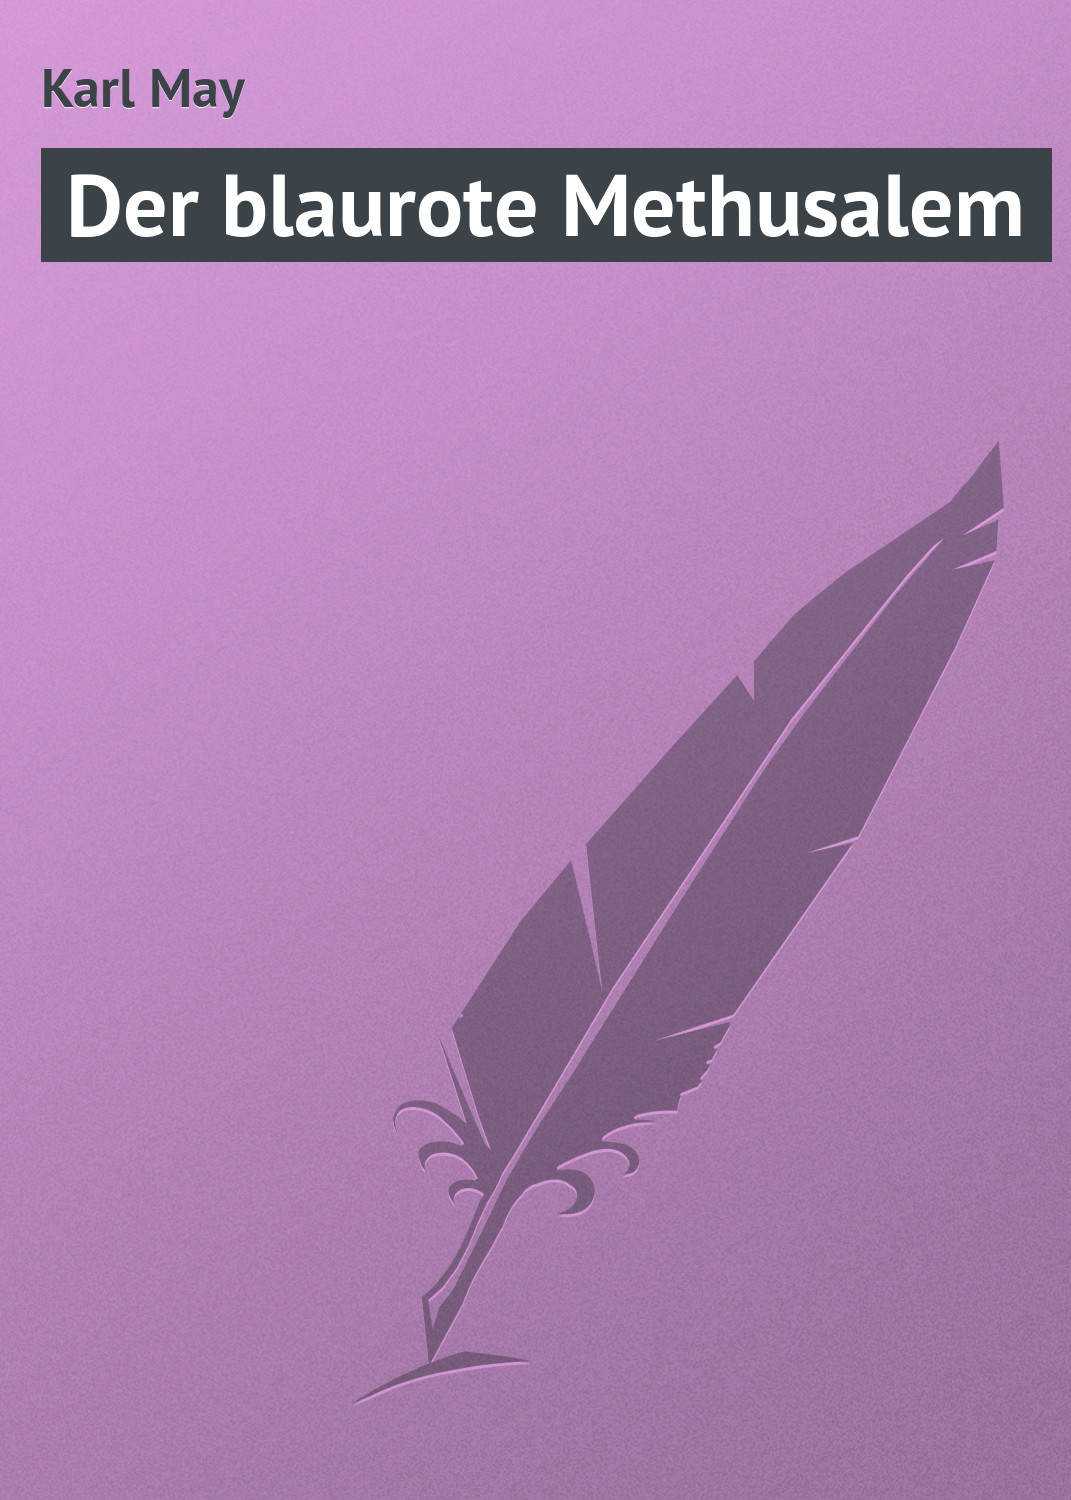 Книга Der blaurote Methusalem из серии , созданная Karl May, может относится к жанру Зарубежная старинная литература, Зарубежная классика. Стоимость электронной книги Der blaurote Methusalem с идентификатором 21106902 составляет 5.99 руб.